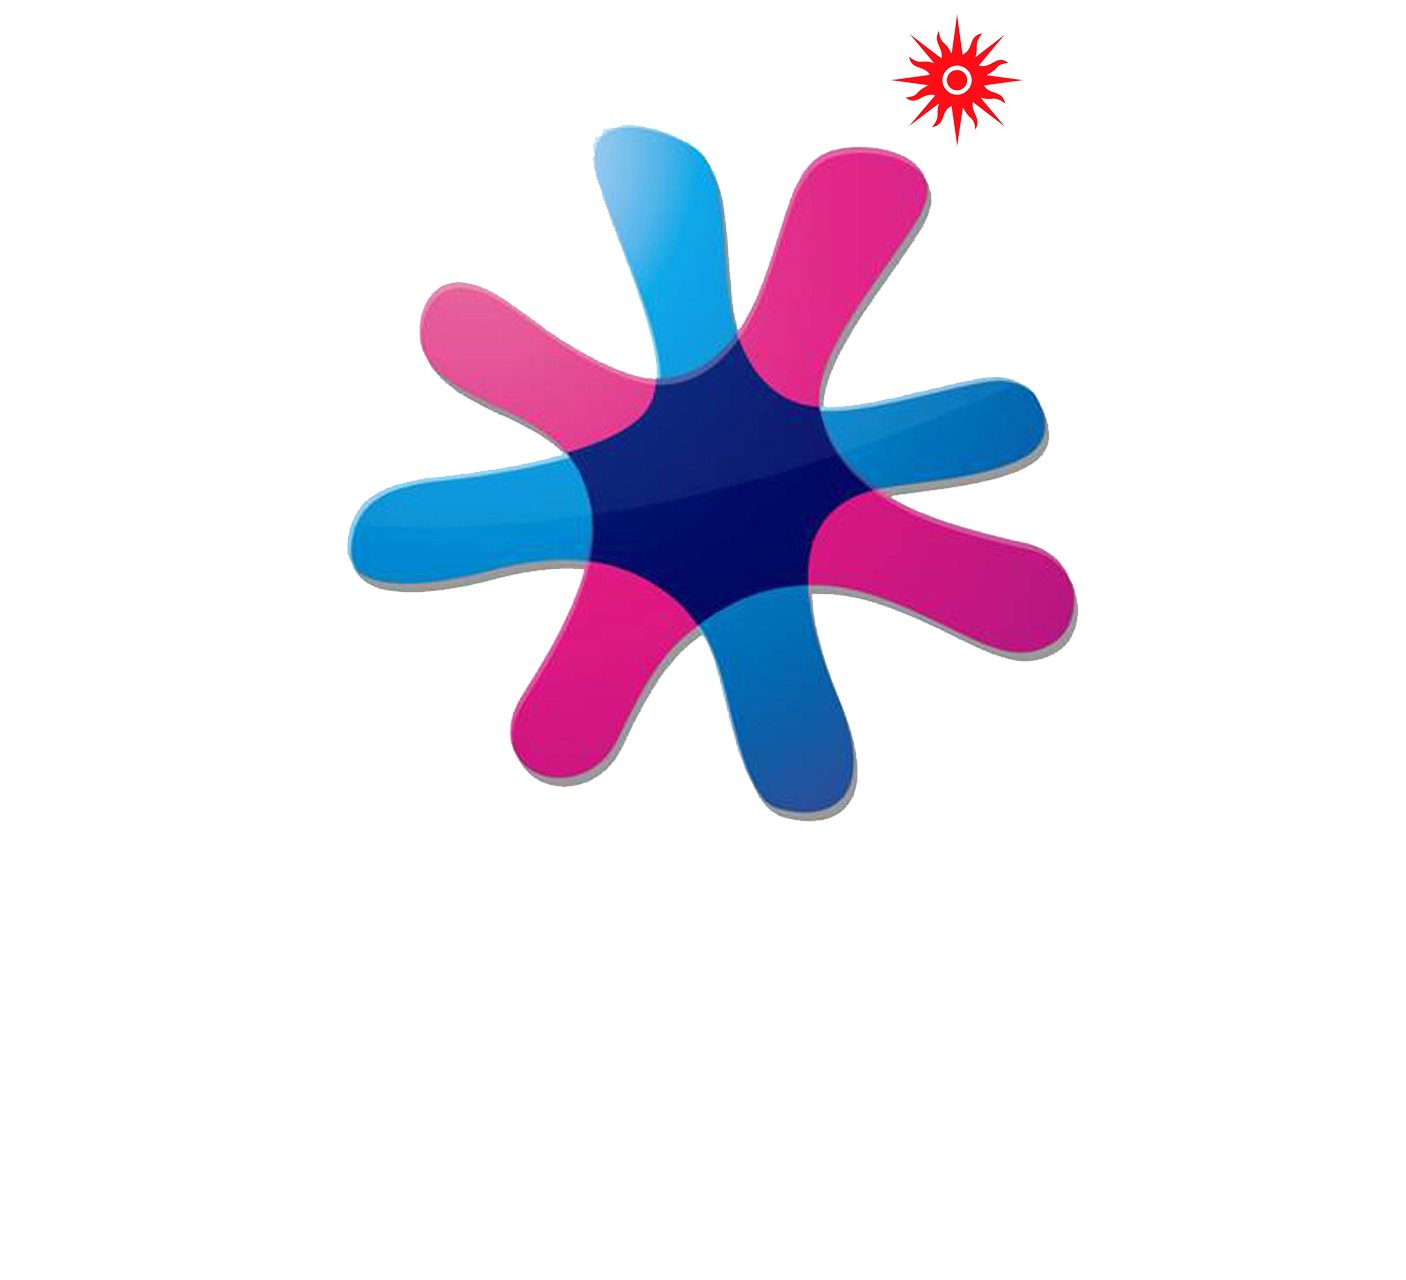 Astana-Almaty 2011